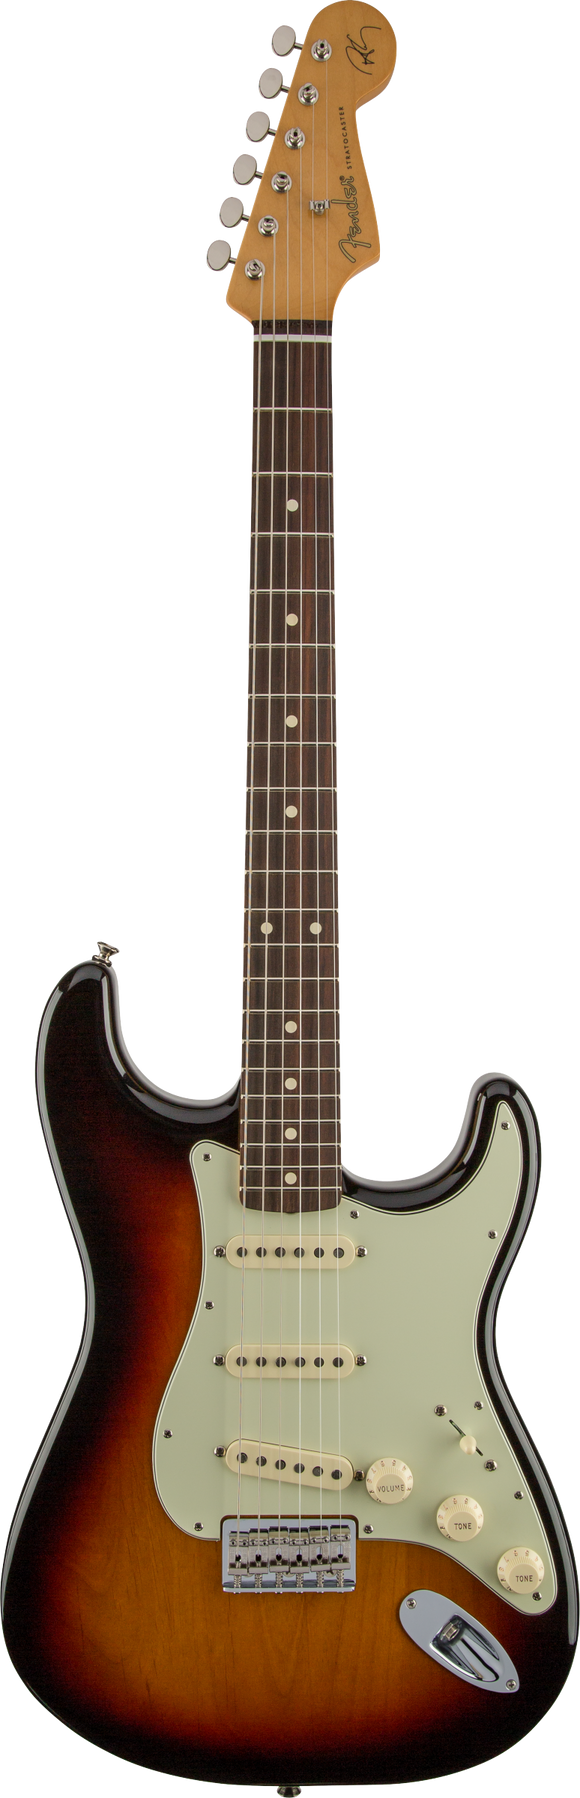 Fender Robert Cray Stratocaster, Rosewood Fingerboard, 3-Color Sunburst